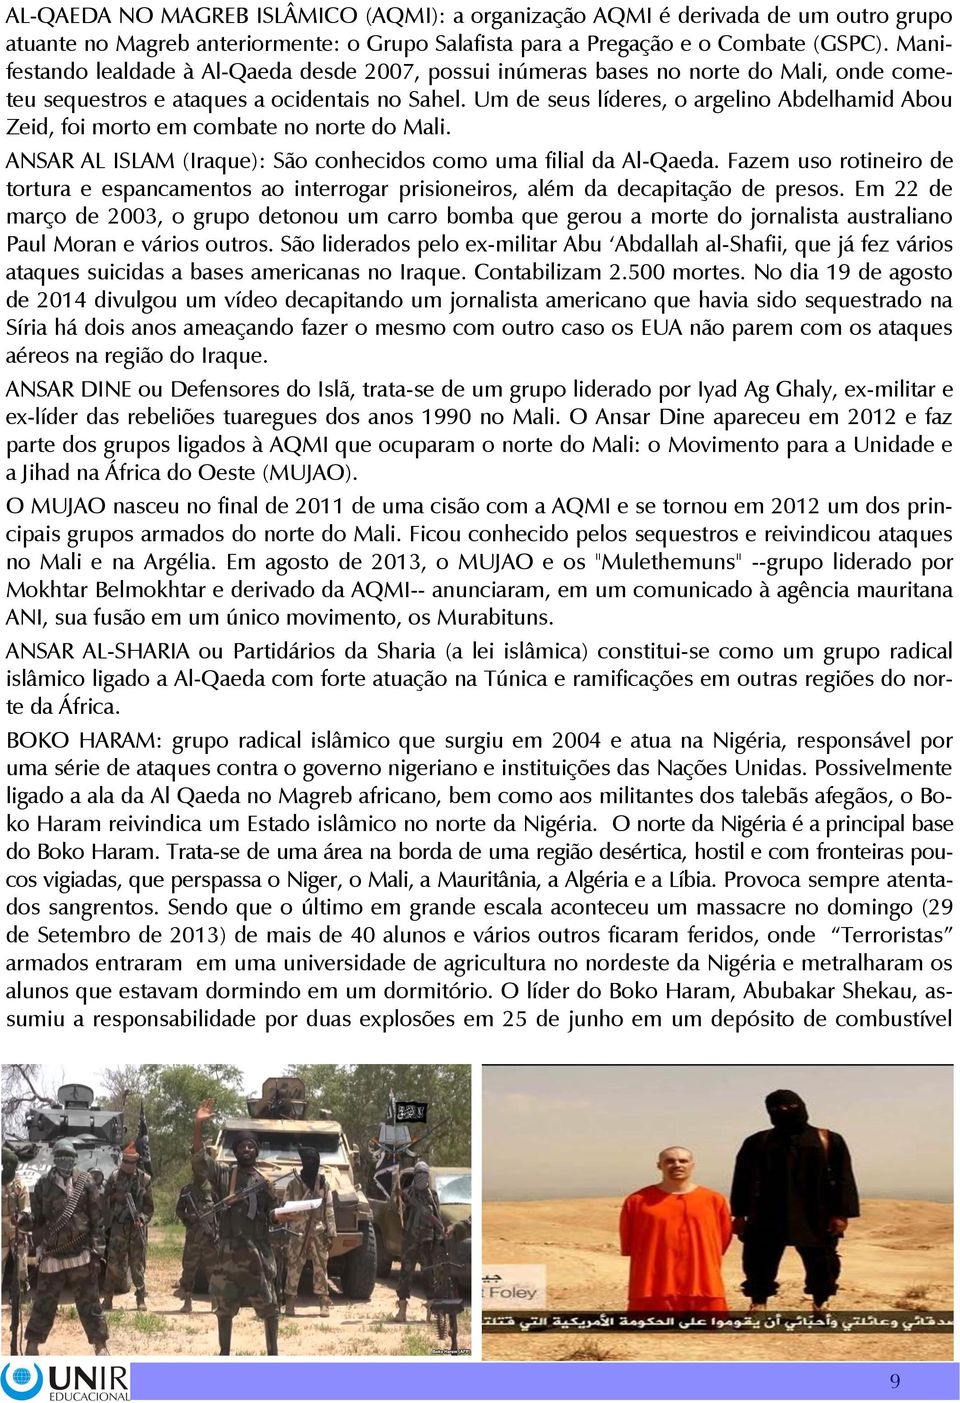 Um de seus líderes, o argelino Abdelhamid Abou Zeid, foi morto em combate no norte do Mali. ANSAR AL ISLAM (Iraque): São conhecidos como uma filial da Al-Qaeda.